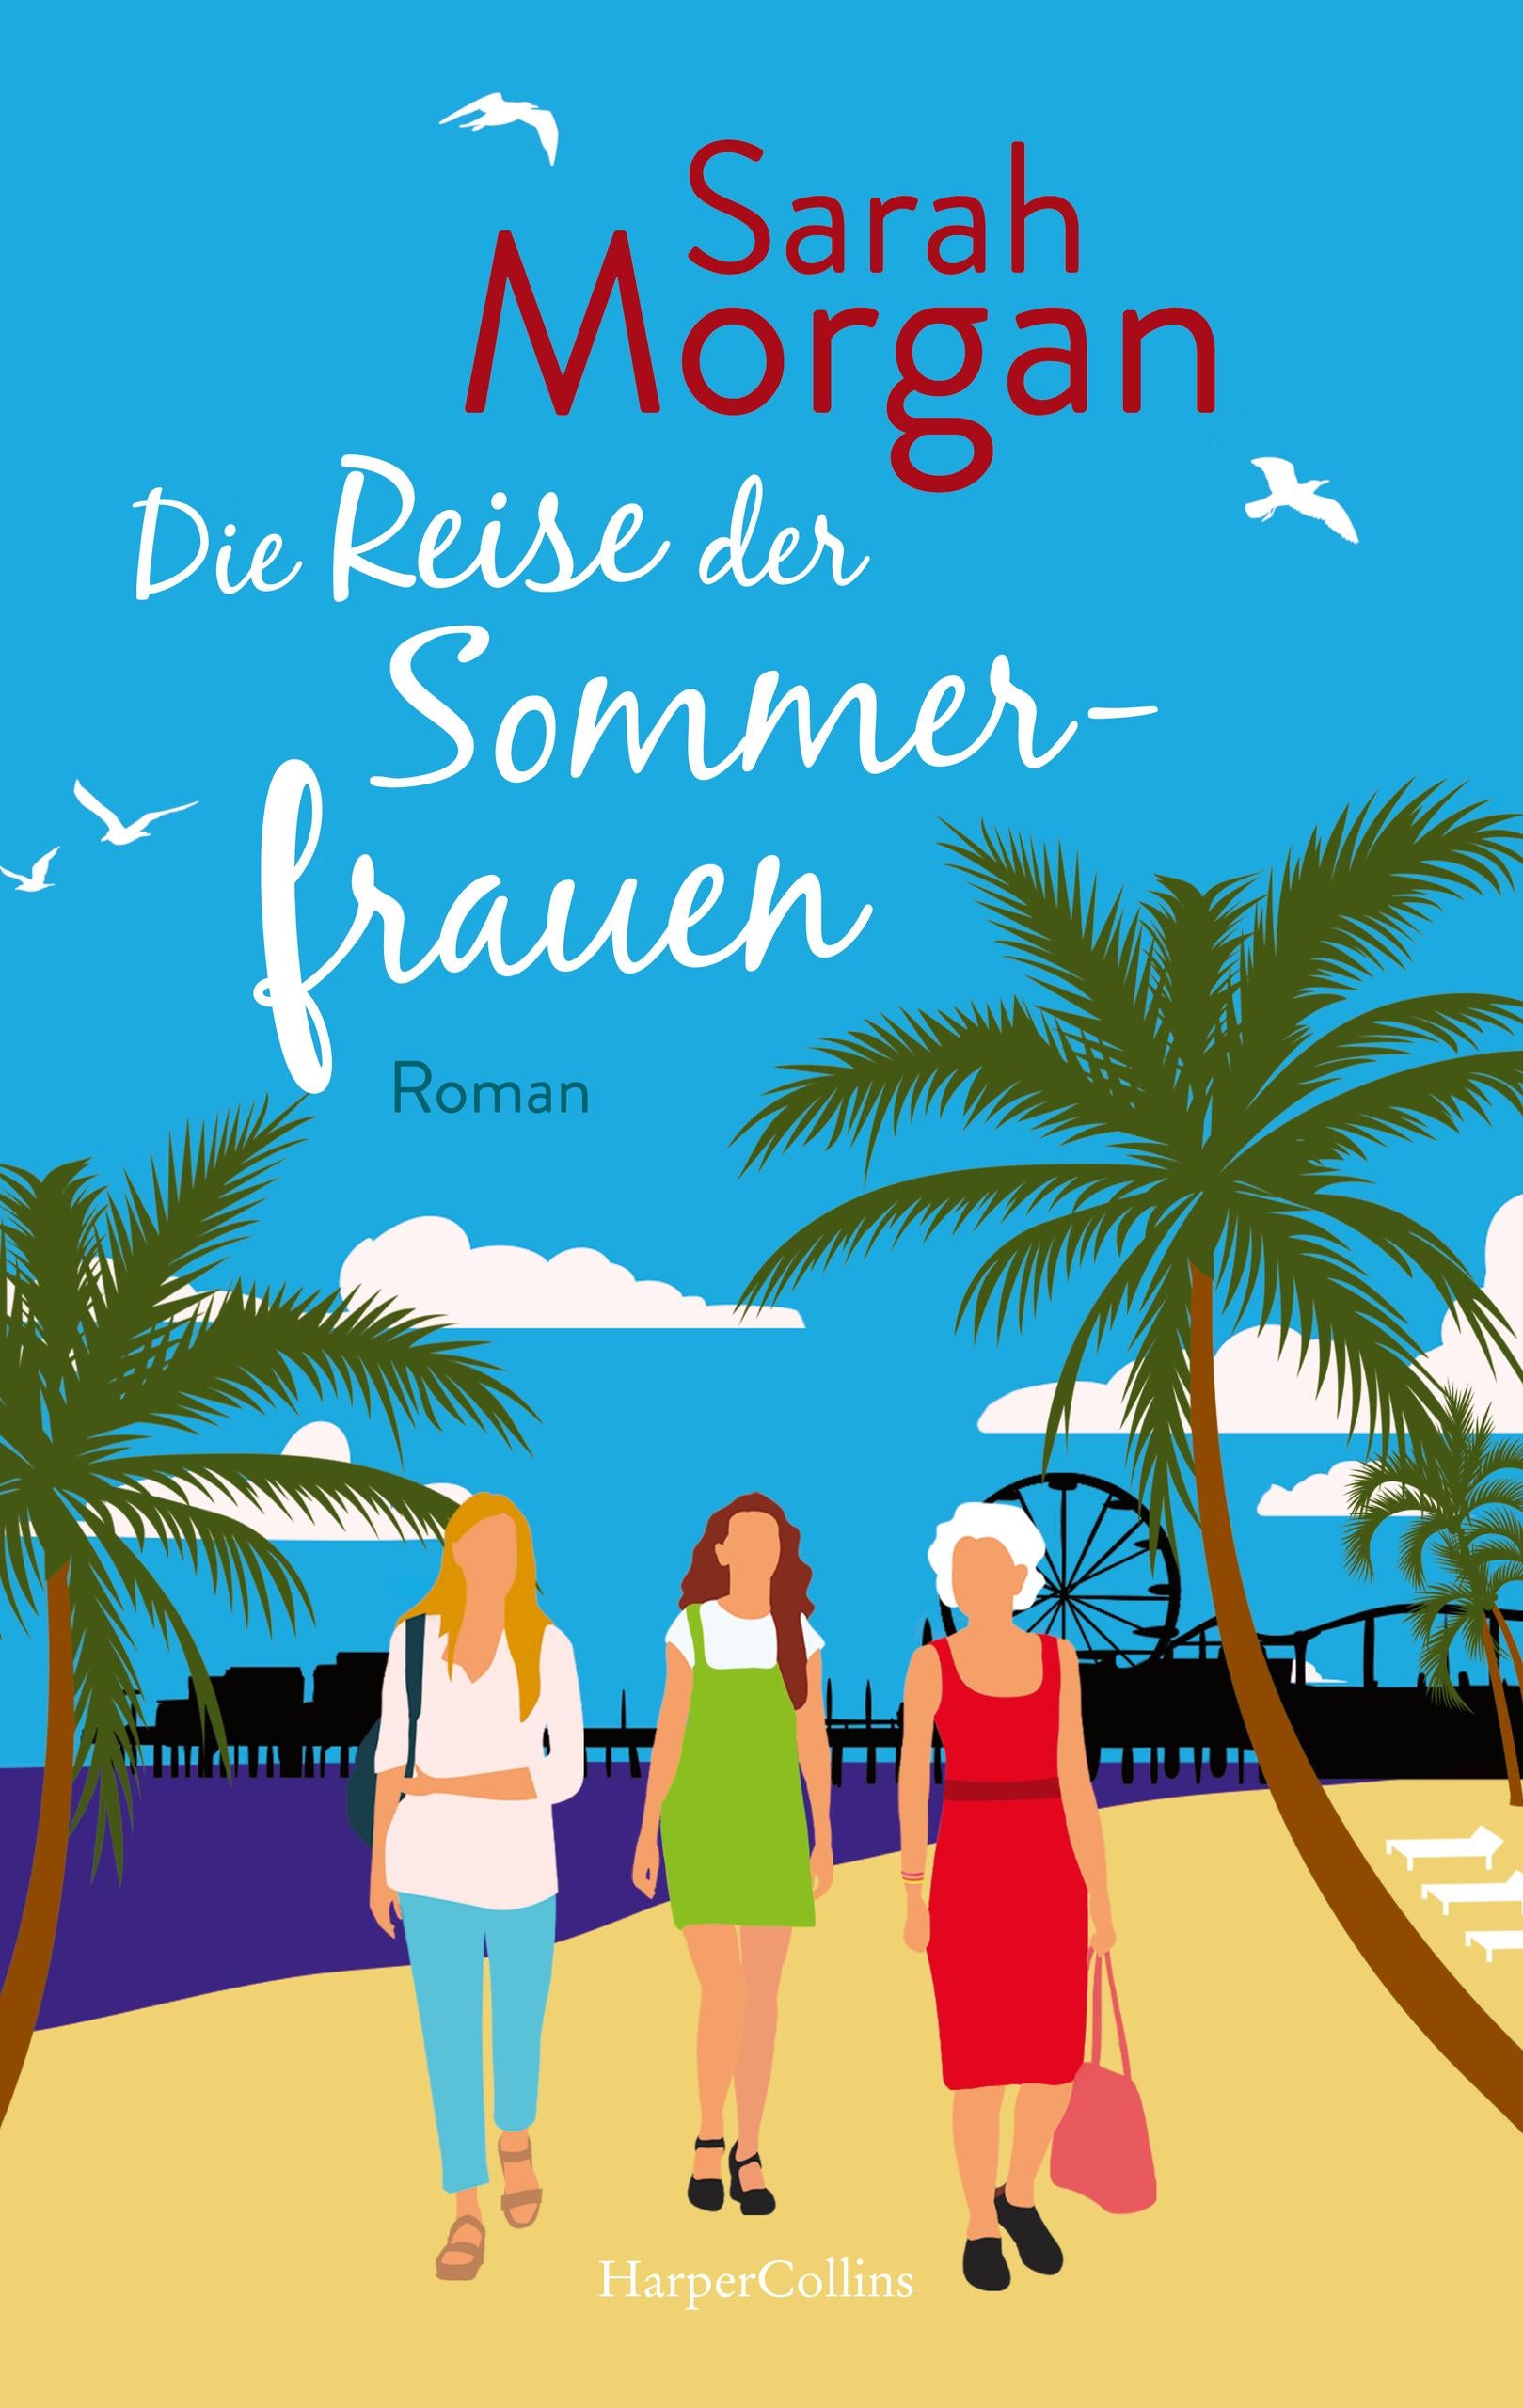 Die Reise der Sommerfrauen - E-Book  Verlagsgruppe HarperCollins  Deutschland